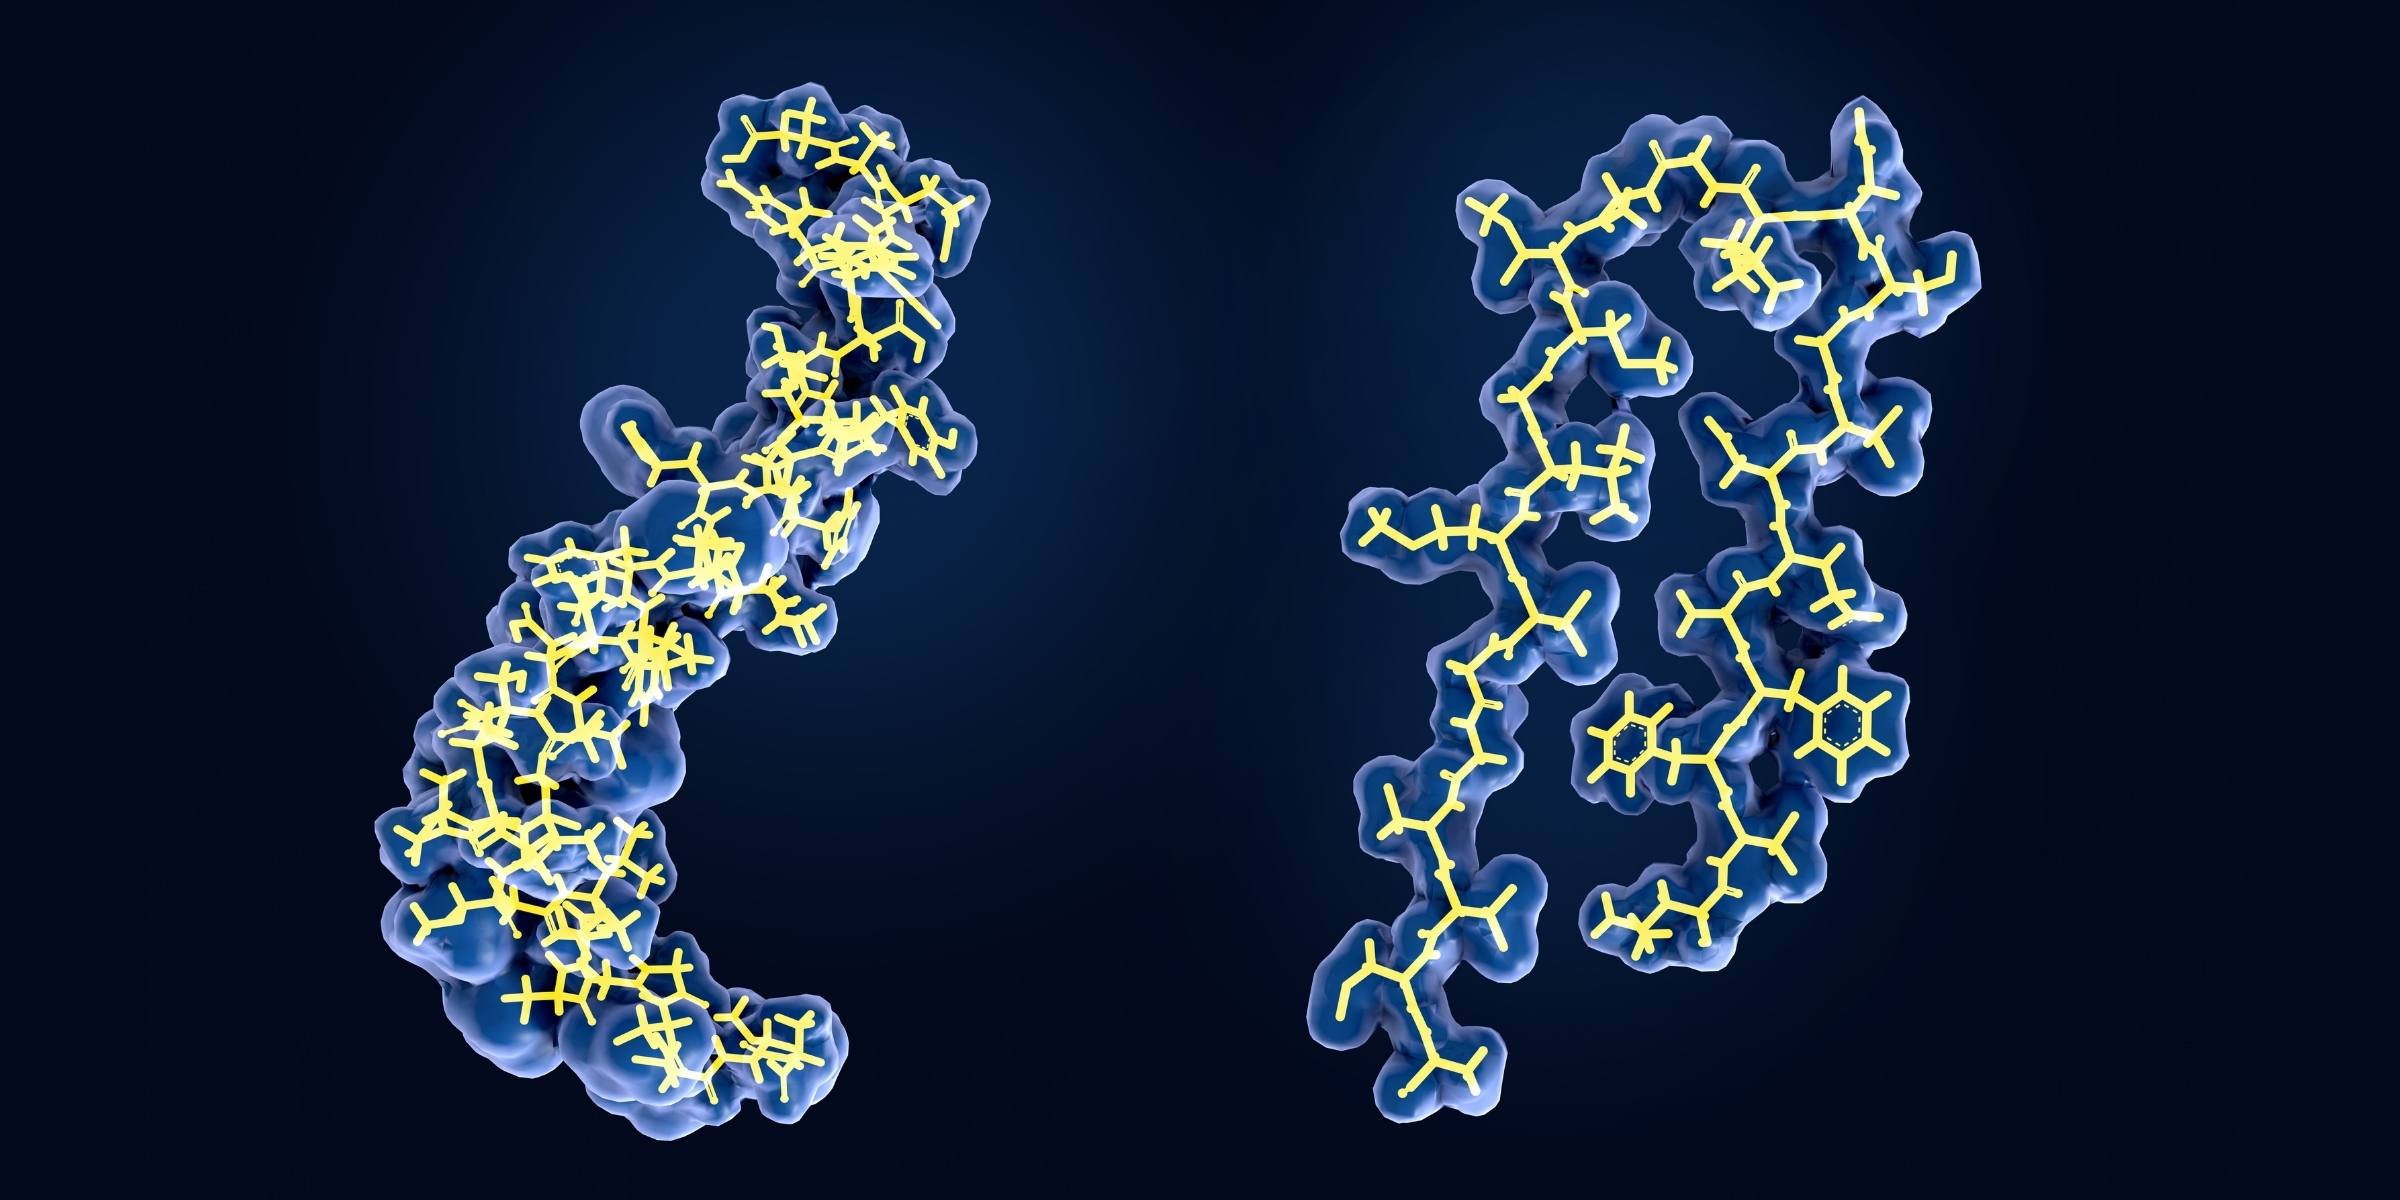 細胞に結合したアミロイドベータペプチドの構造